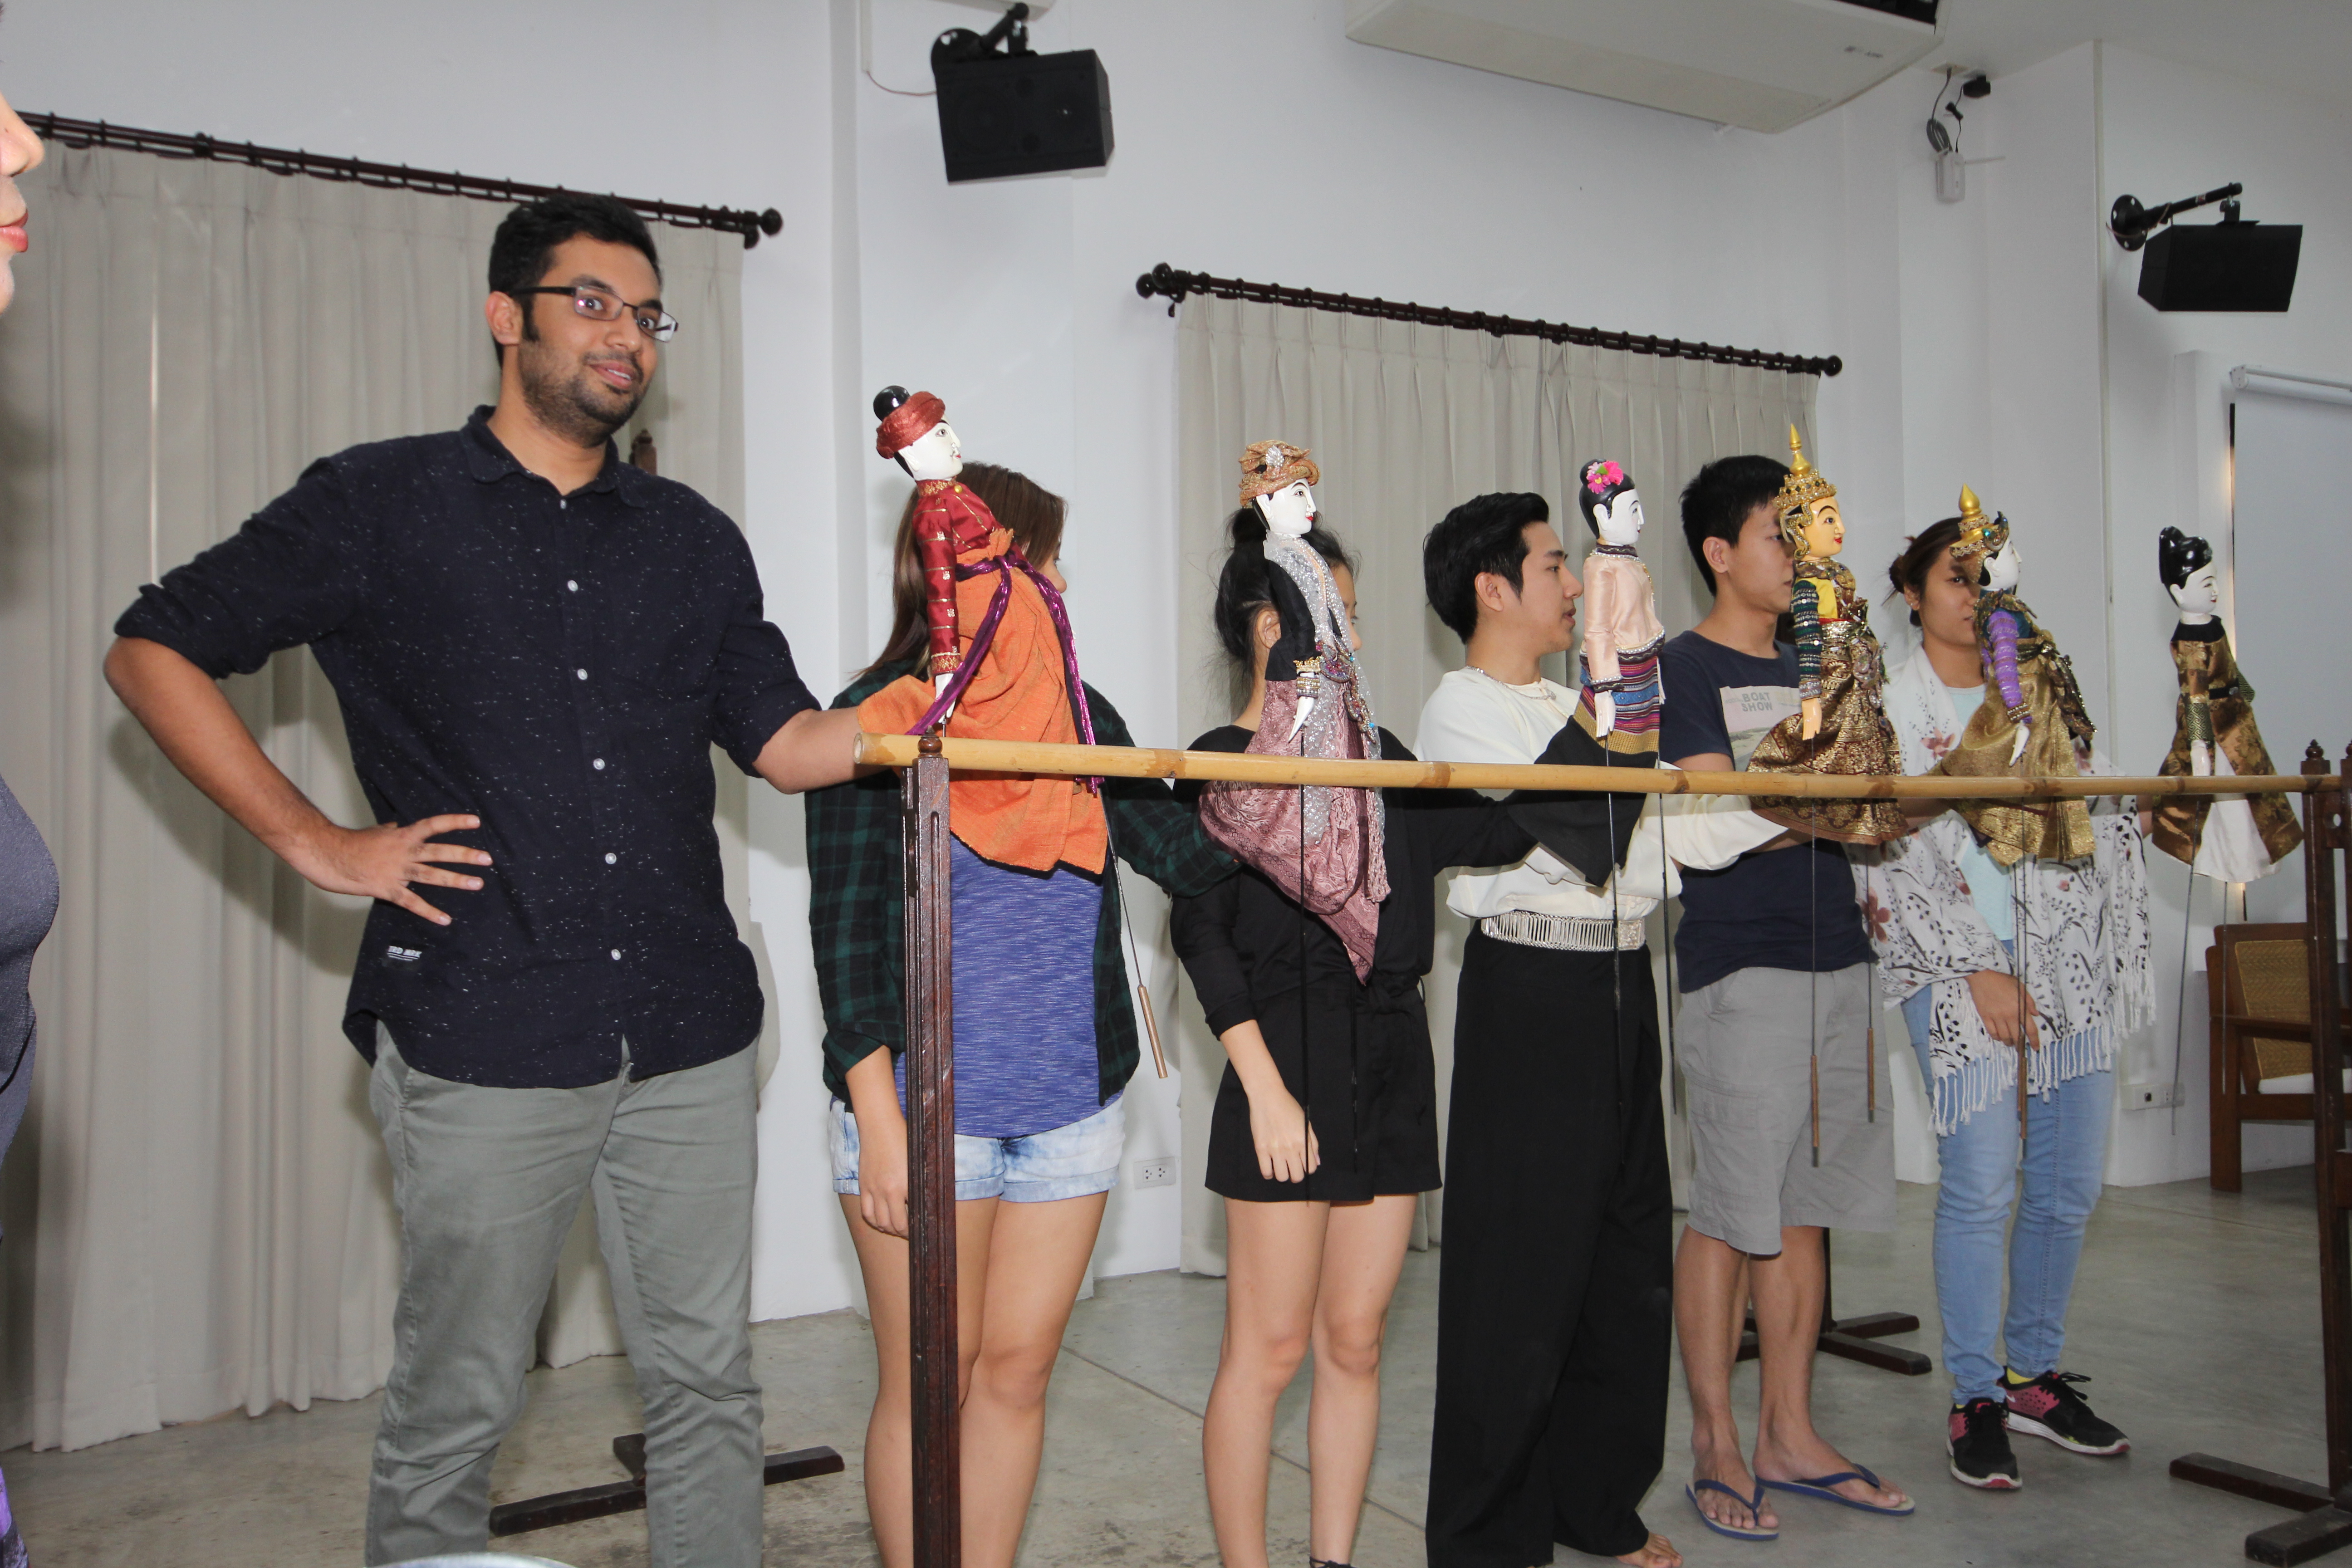 ผู้อำนวยการสำนักส่งเสริมศิลปวัฒนธรรม ให้เกียรติเป็นวิทยากรบรรยายในหัวข้อ Introduction to Thai Dancing - Introduction to Thai Puppetry และ Thai Lanna Dancing 